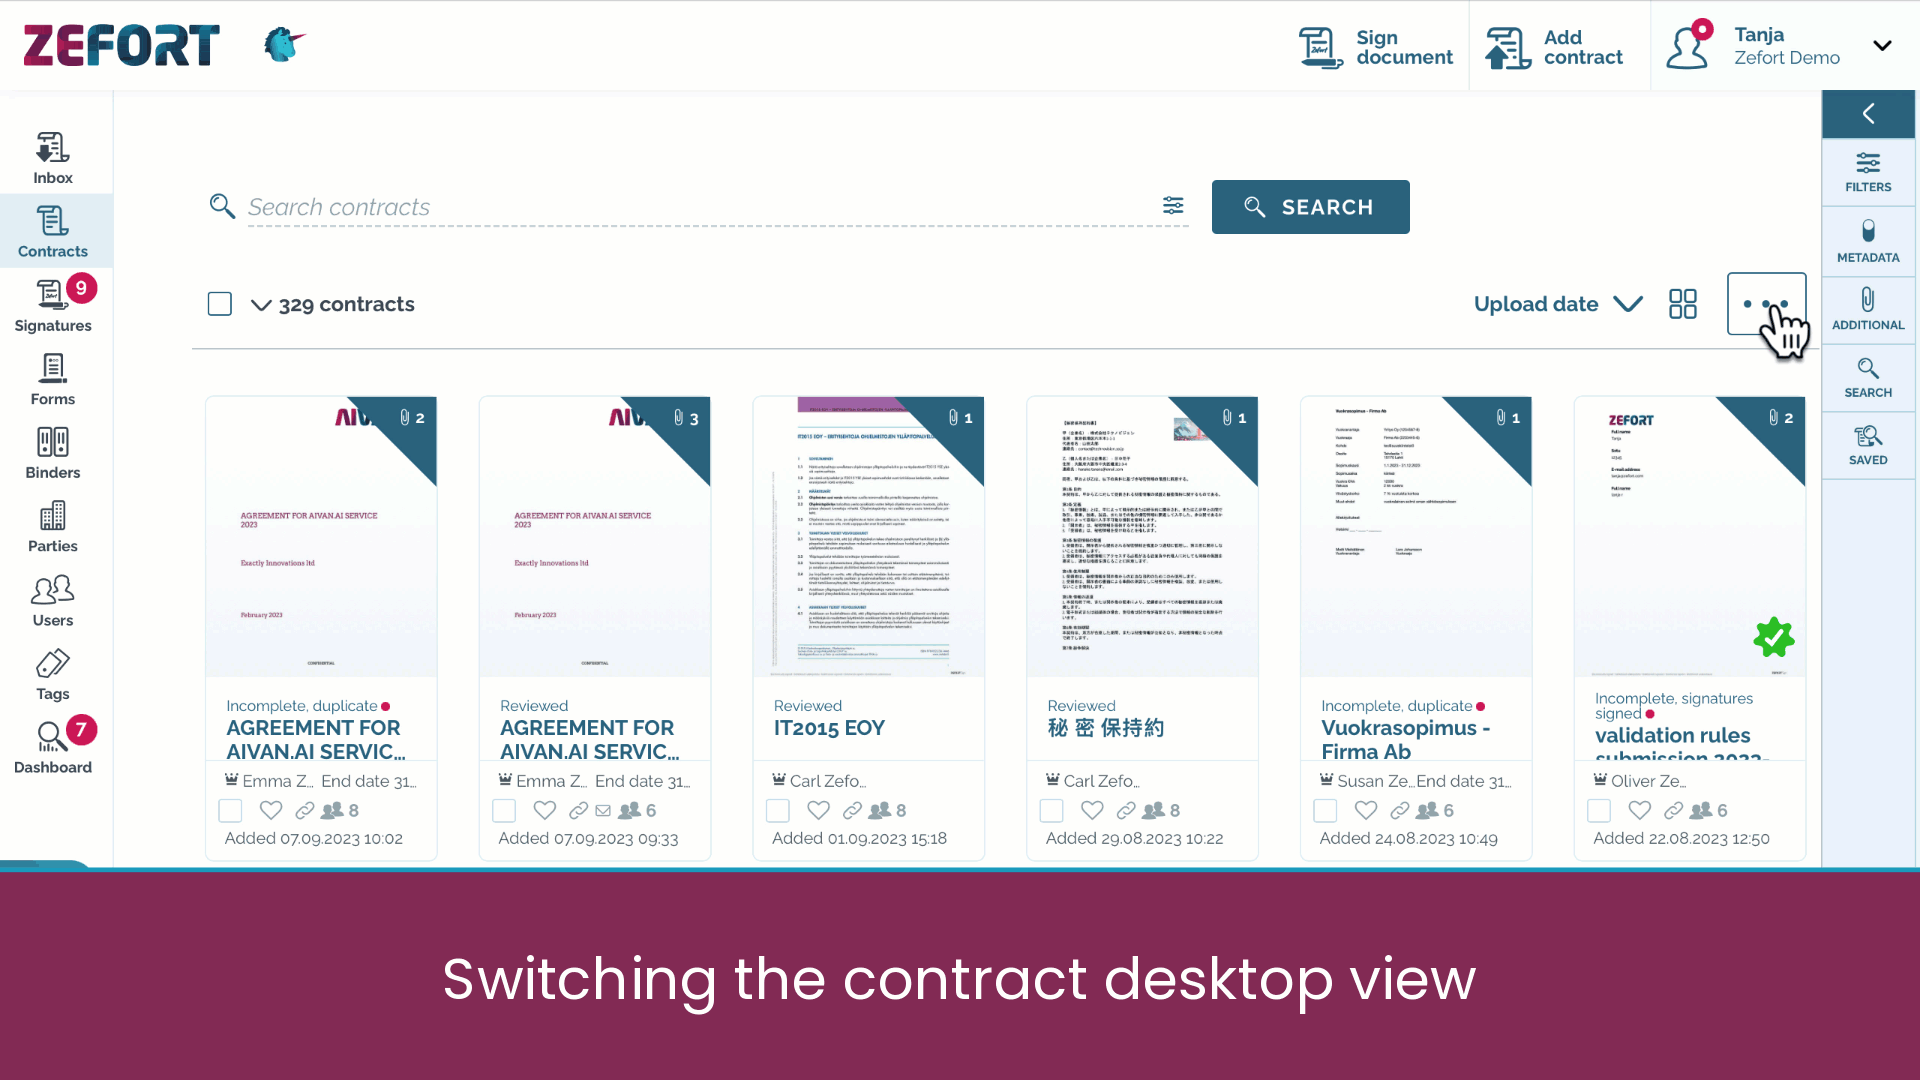 zefort switching the contract desktop view